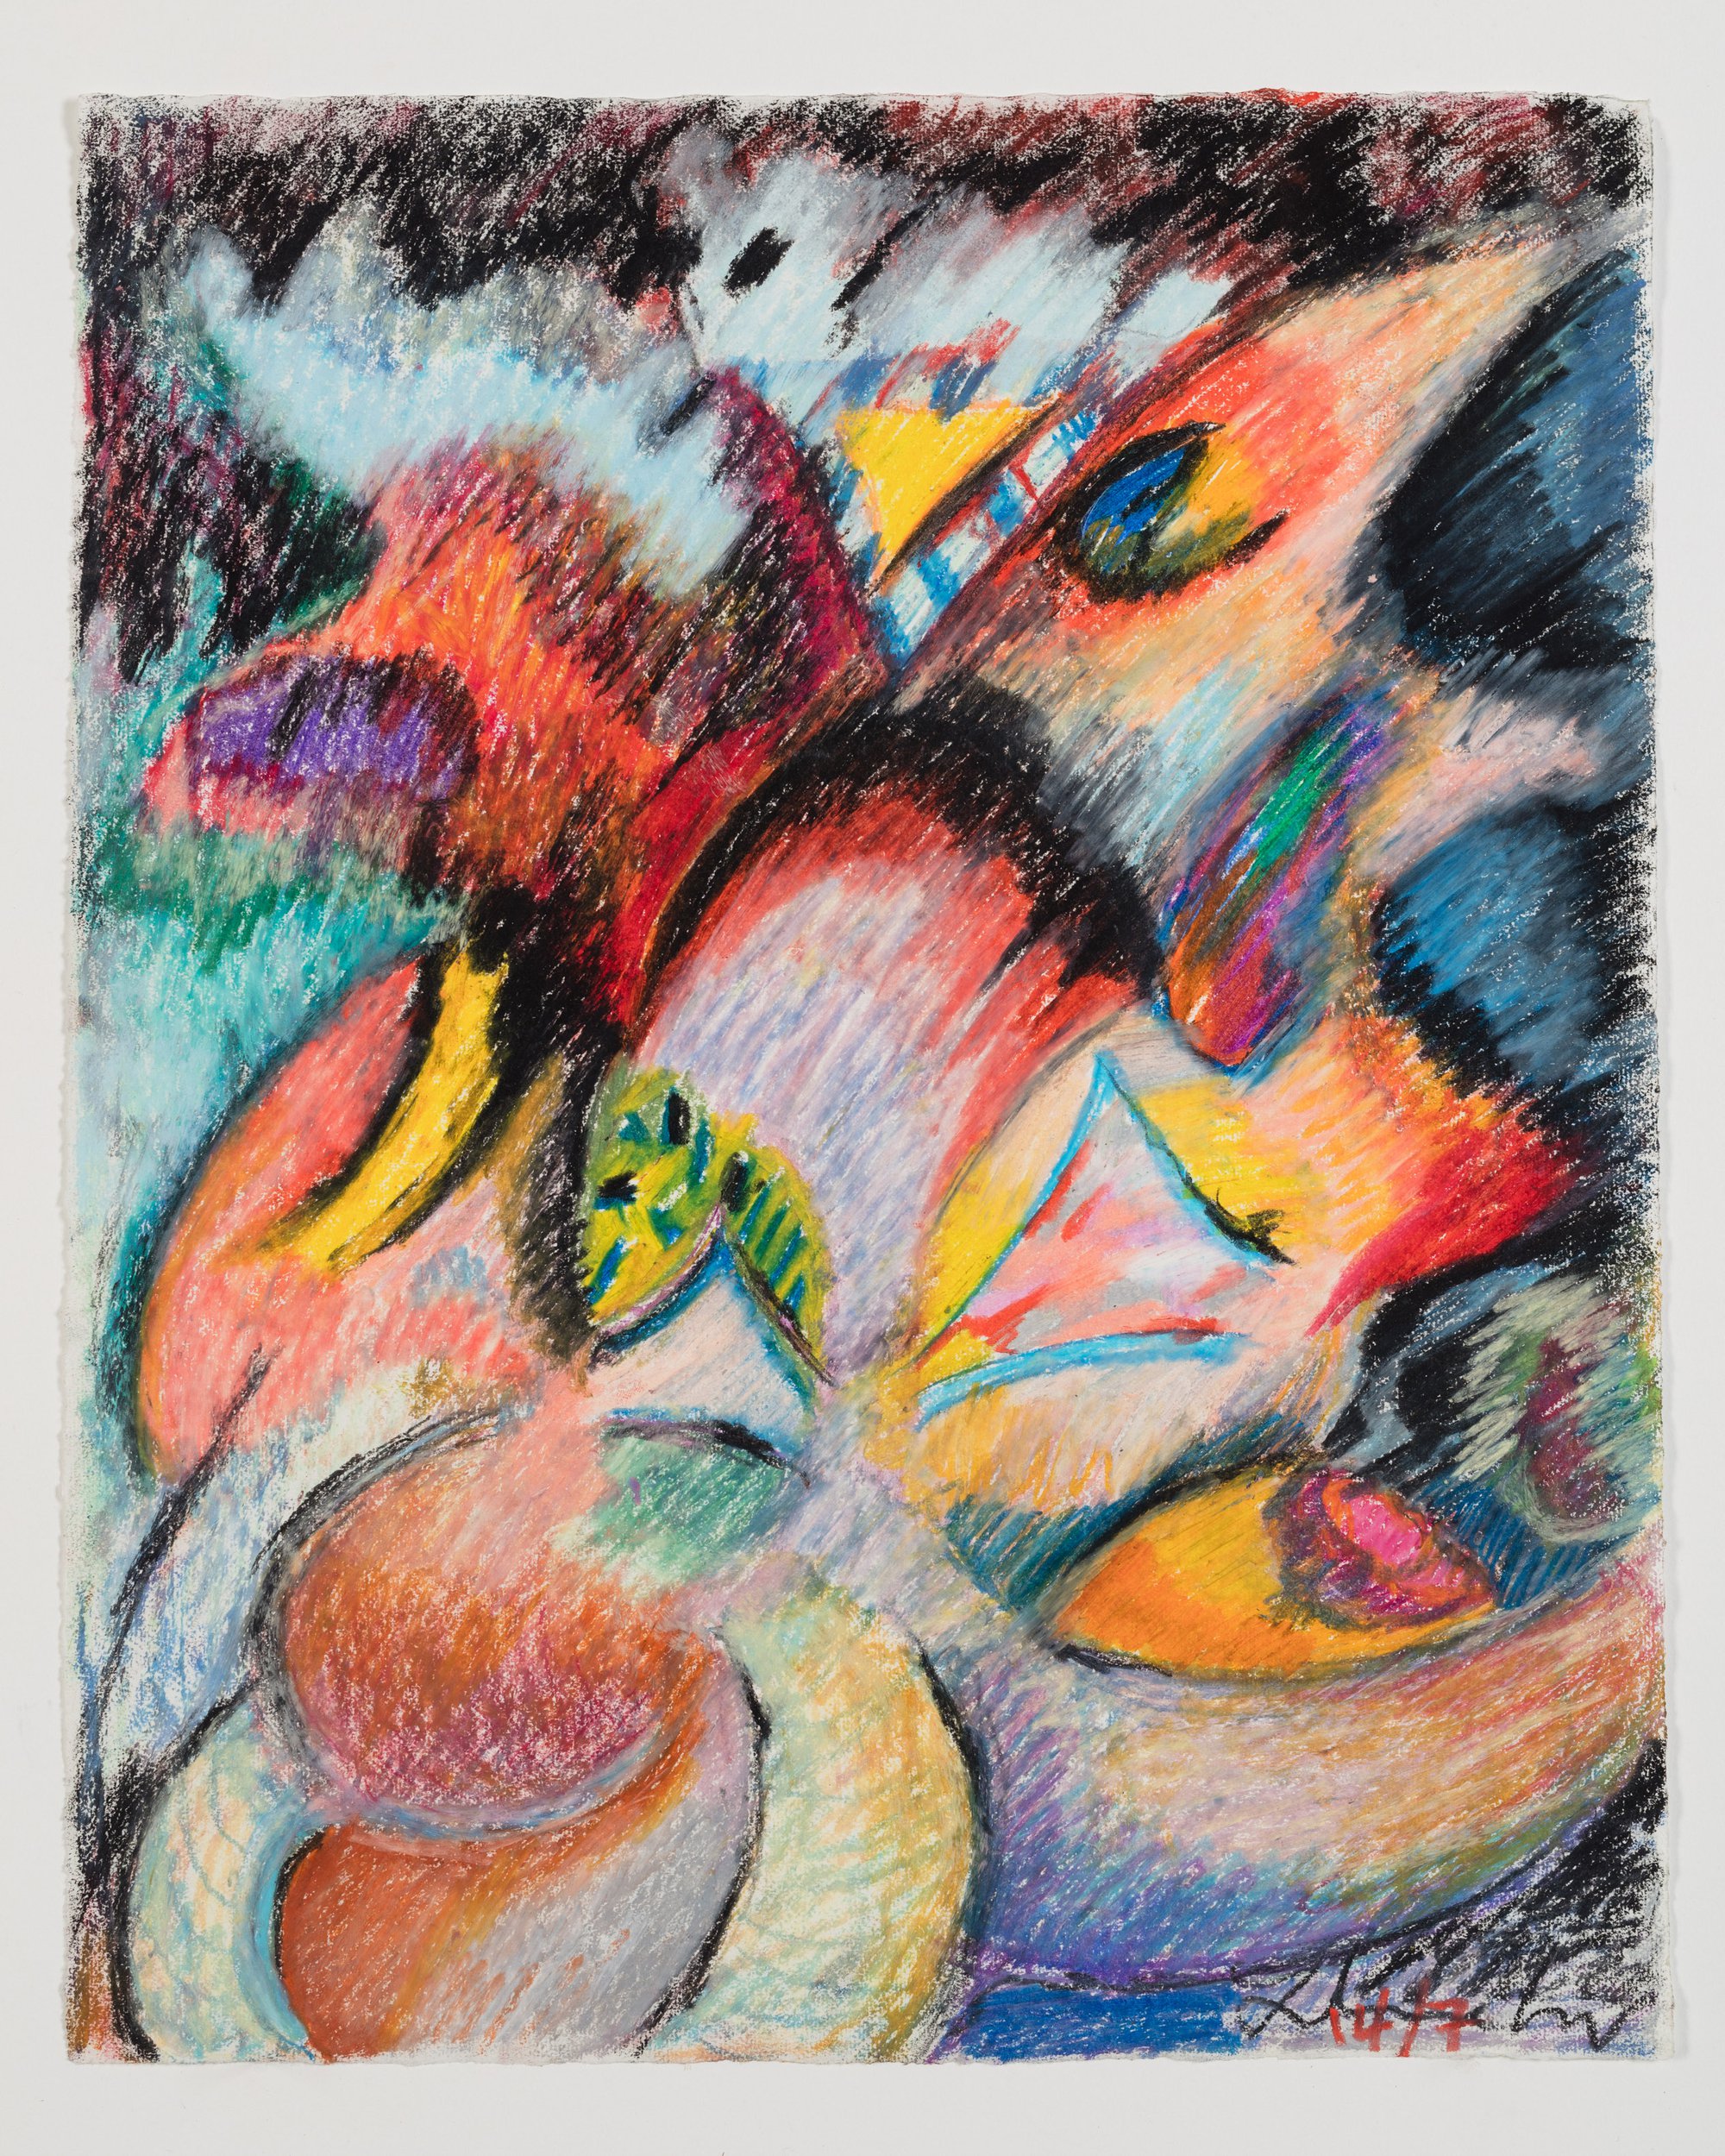 Liliane Lijn, Firelight, oil pastel on paper, 52.5 x 43 cm (framed), 1992